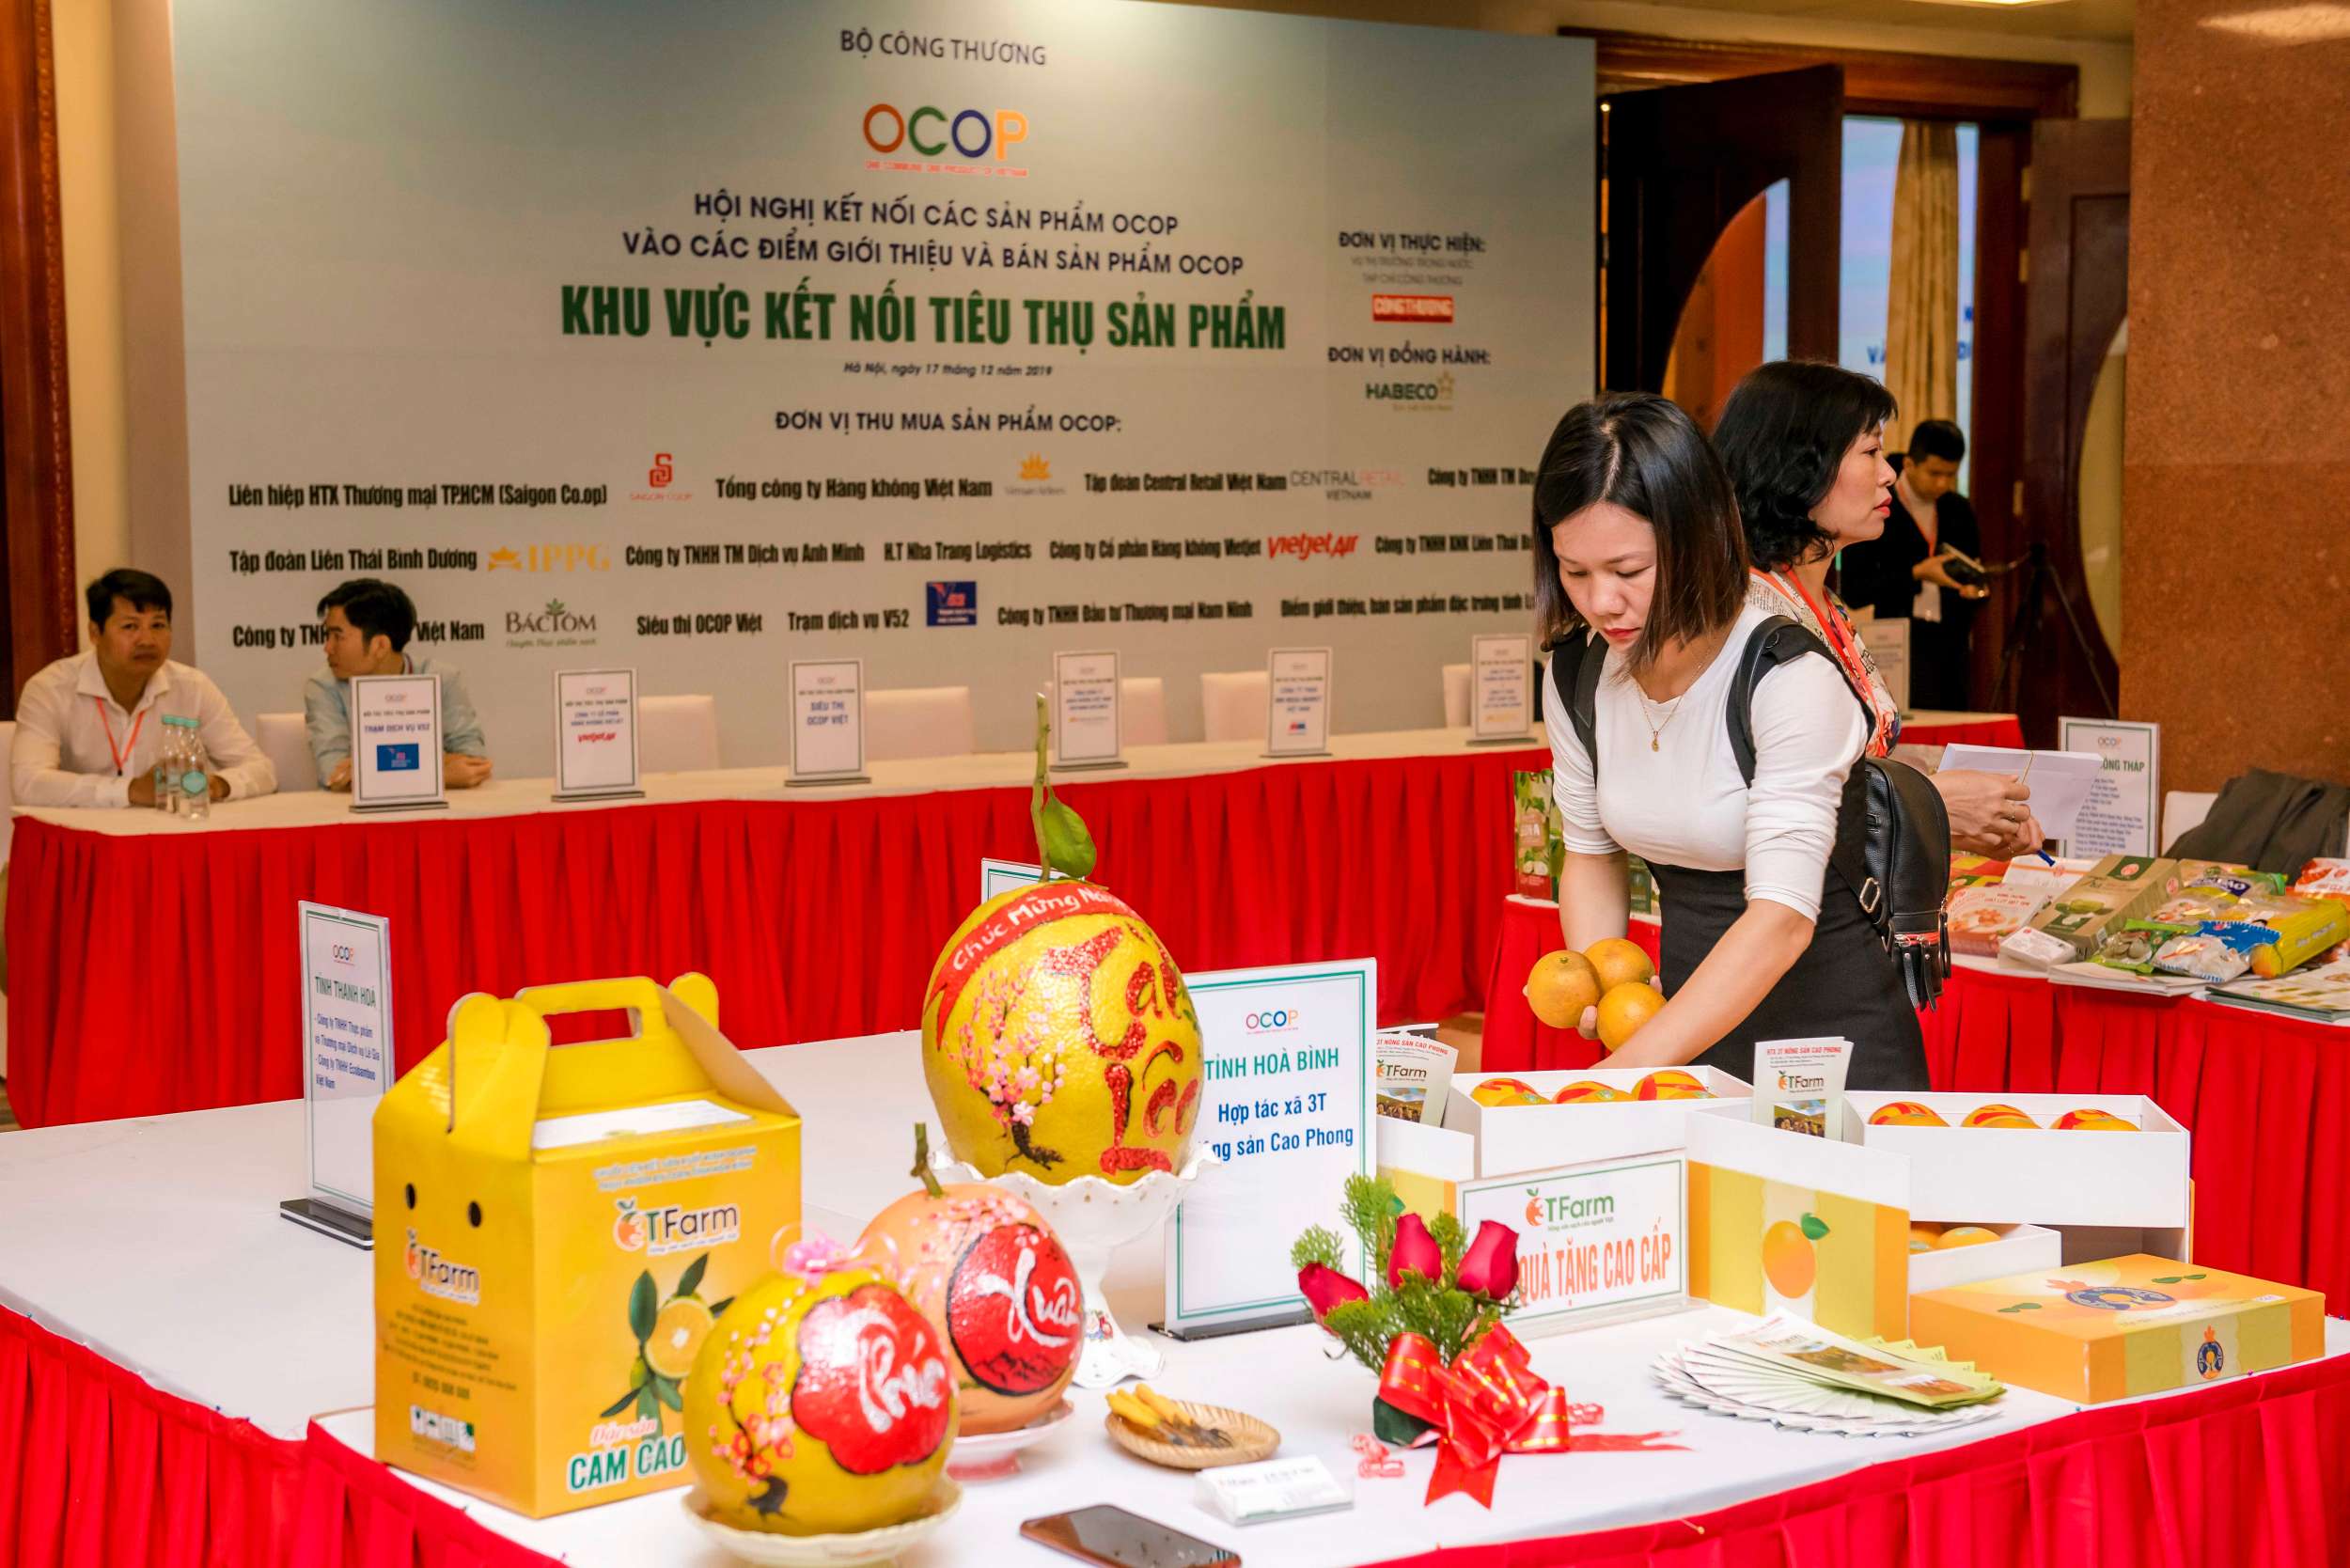 Doanh nghiệp chuẩn bị gian hàng tại Hội nghị Kết nối các sản phẩm OCOP vào các điểm giới thiệu và bán sản phẩm OCOP